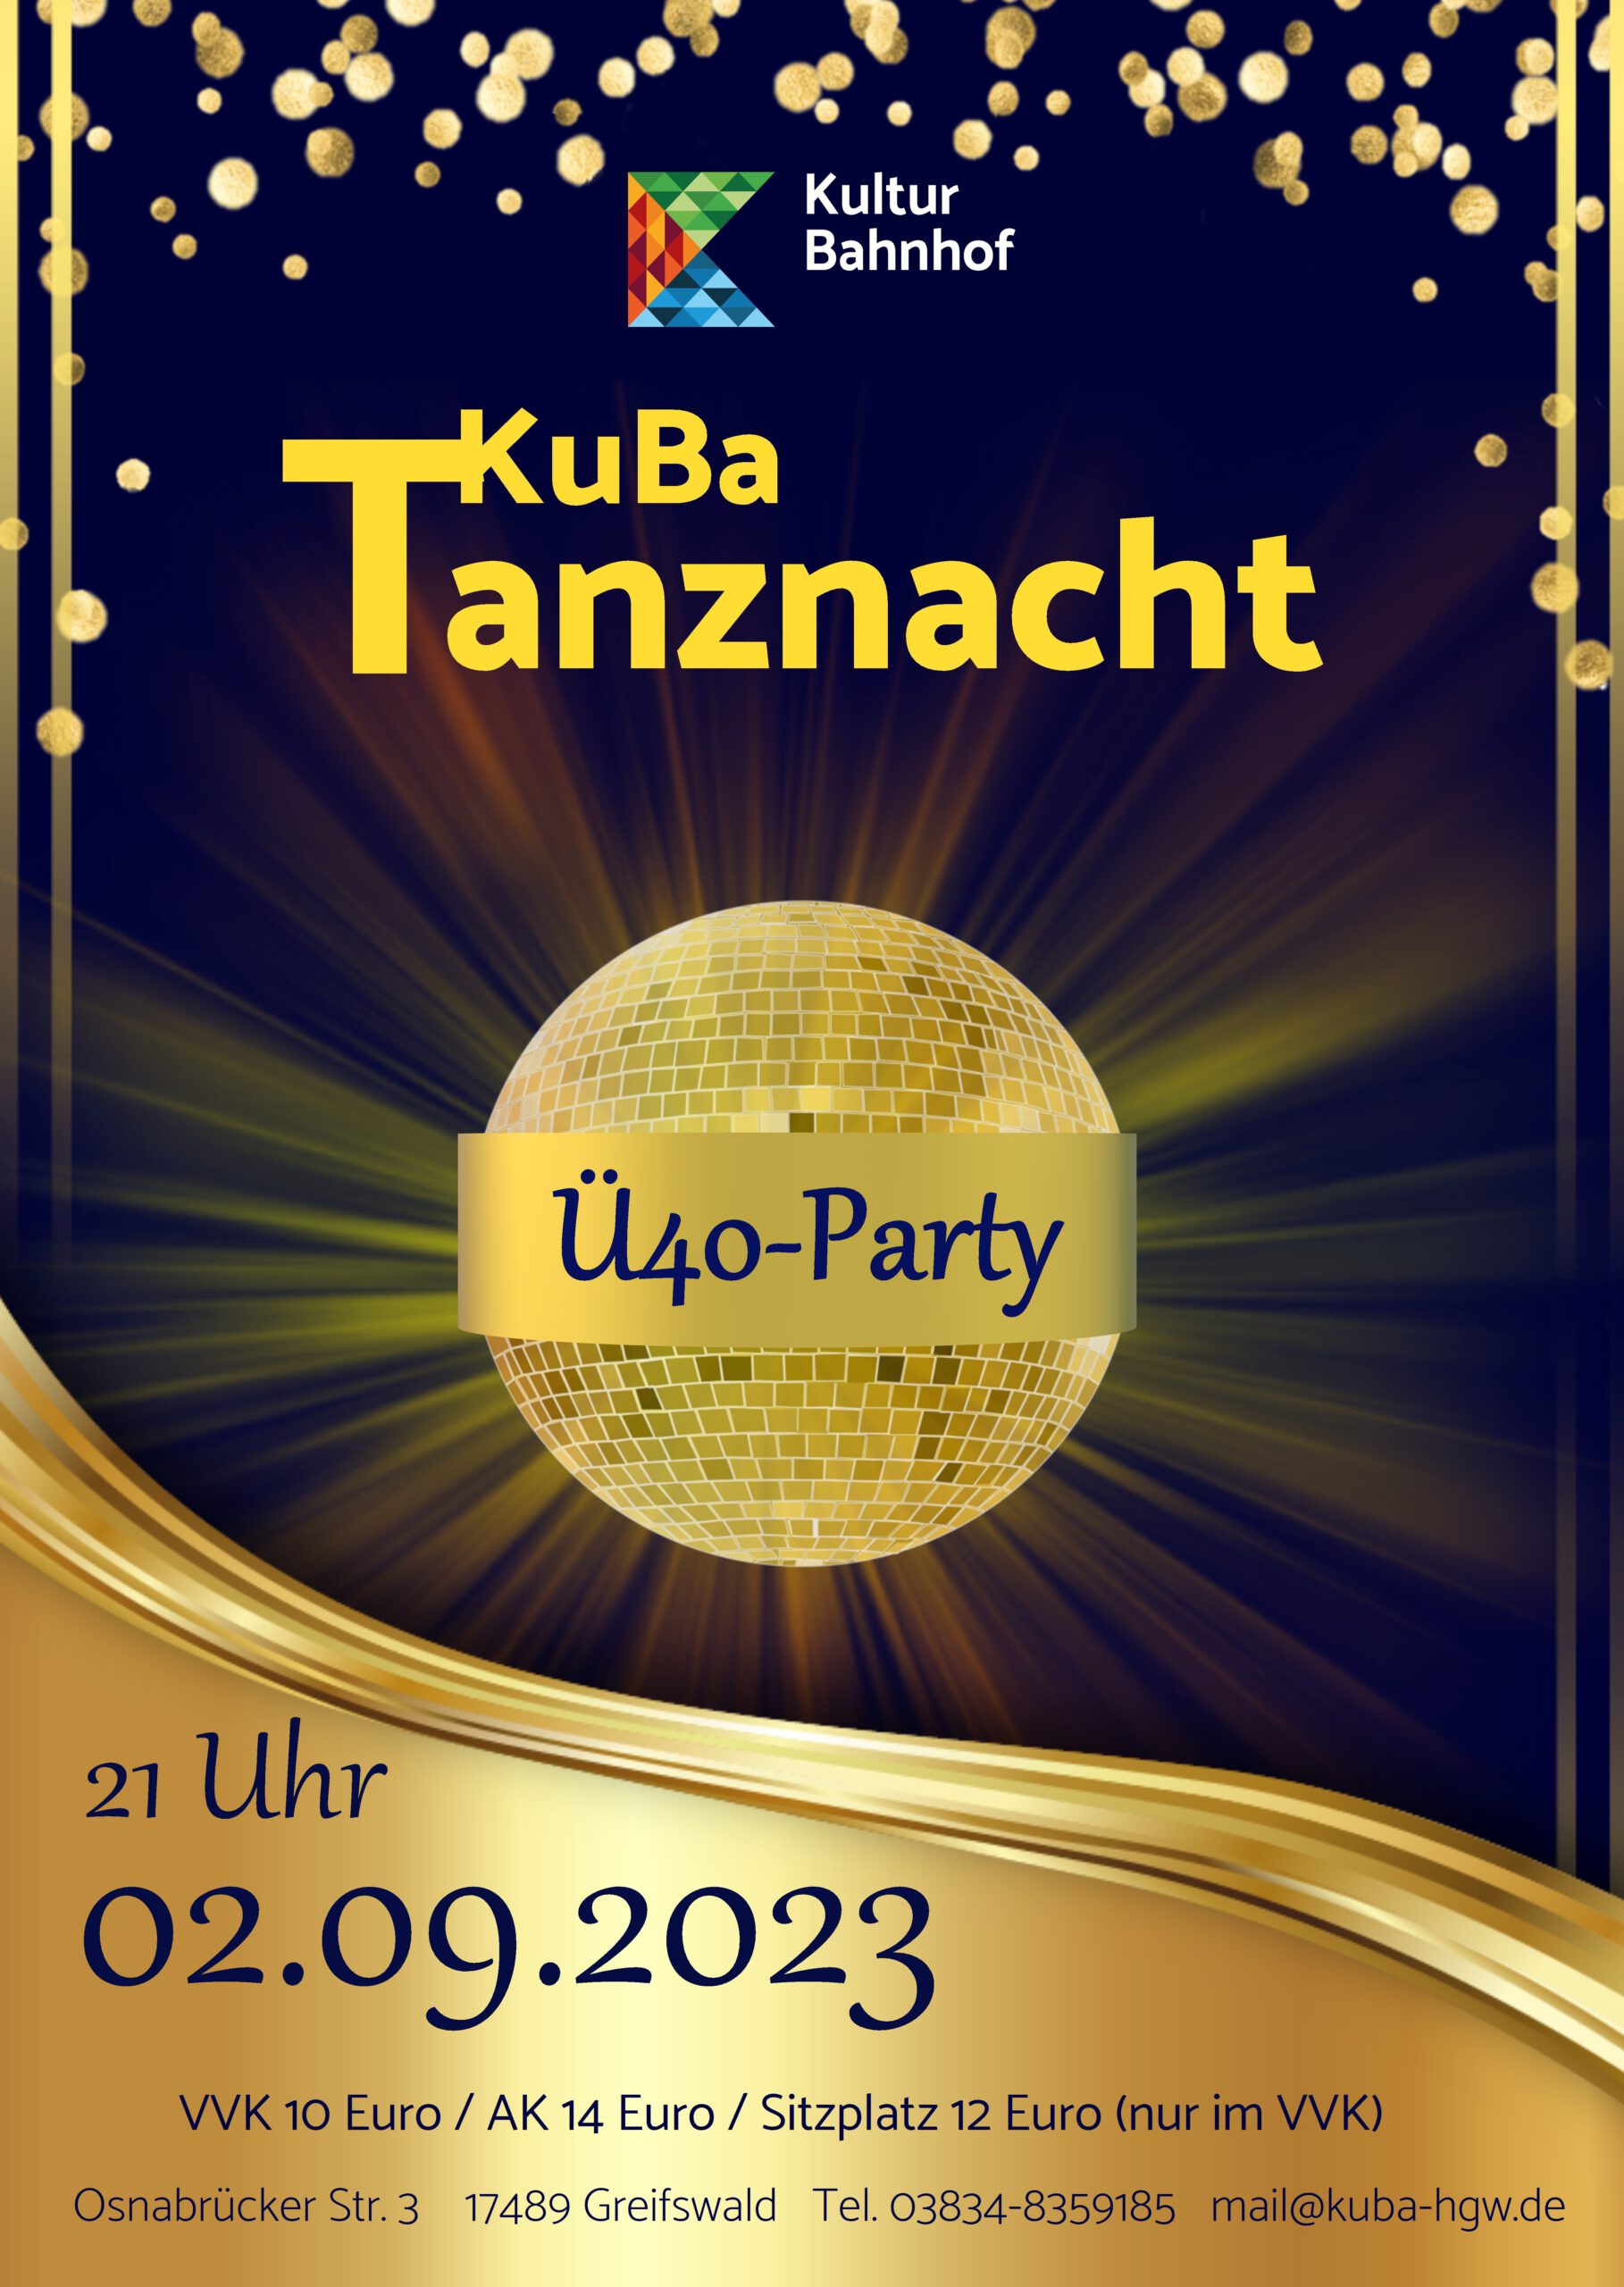 KuBa Tanznacht Ü40-Party